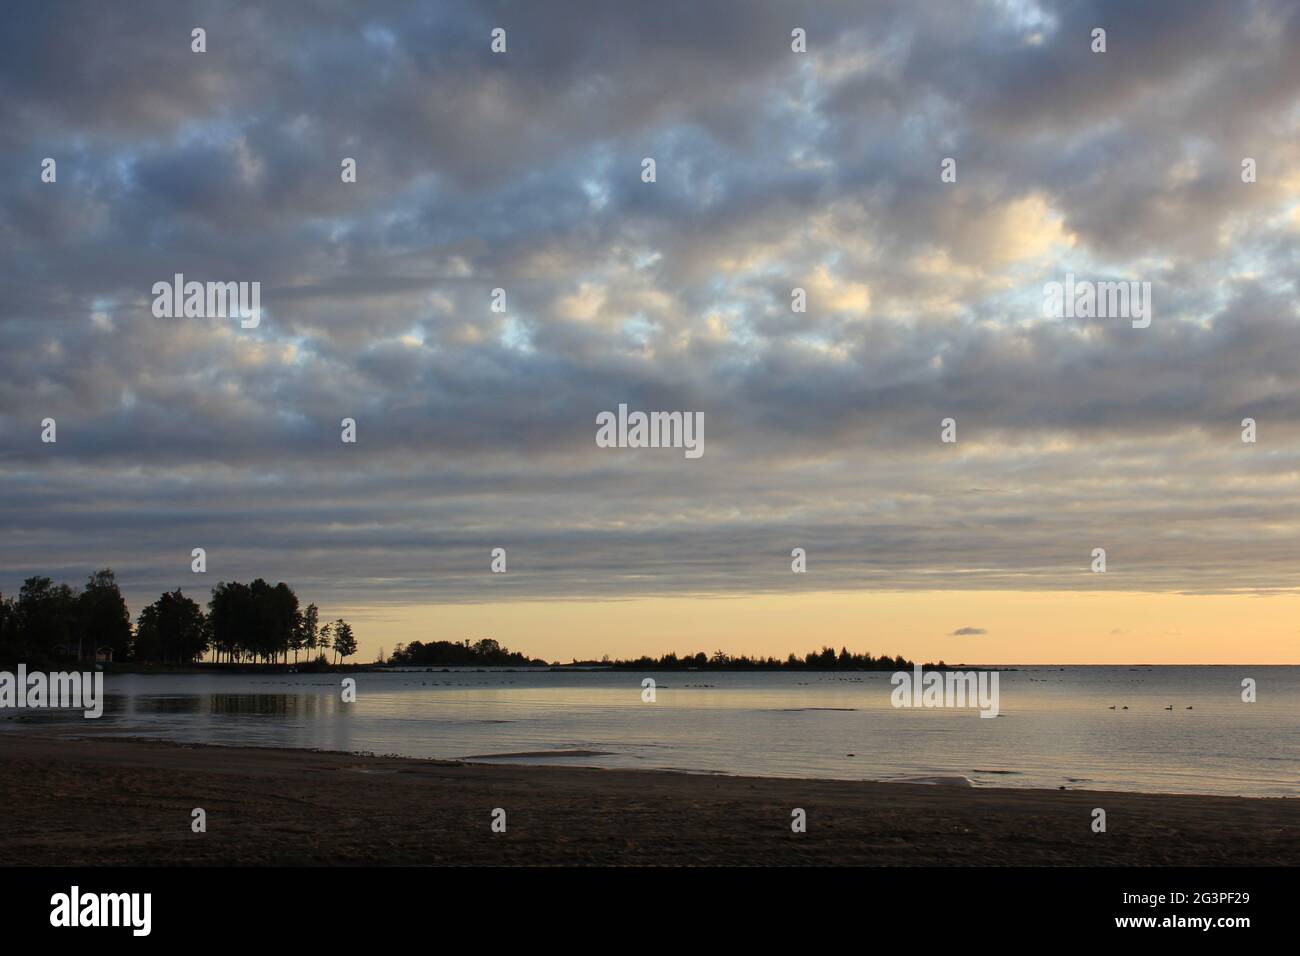 Cloudy summer morning at the shore of Lake Vanern Stock Photo